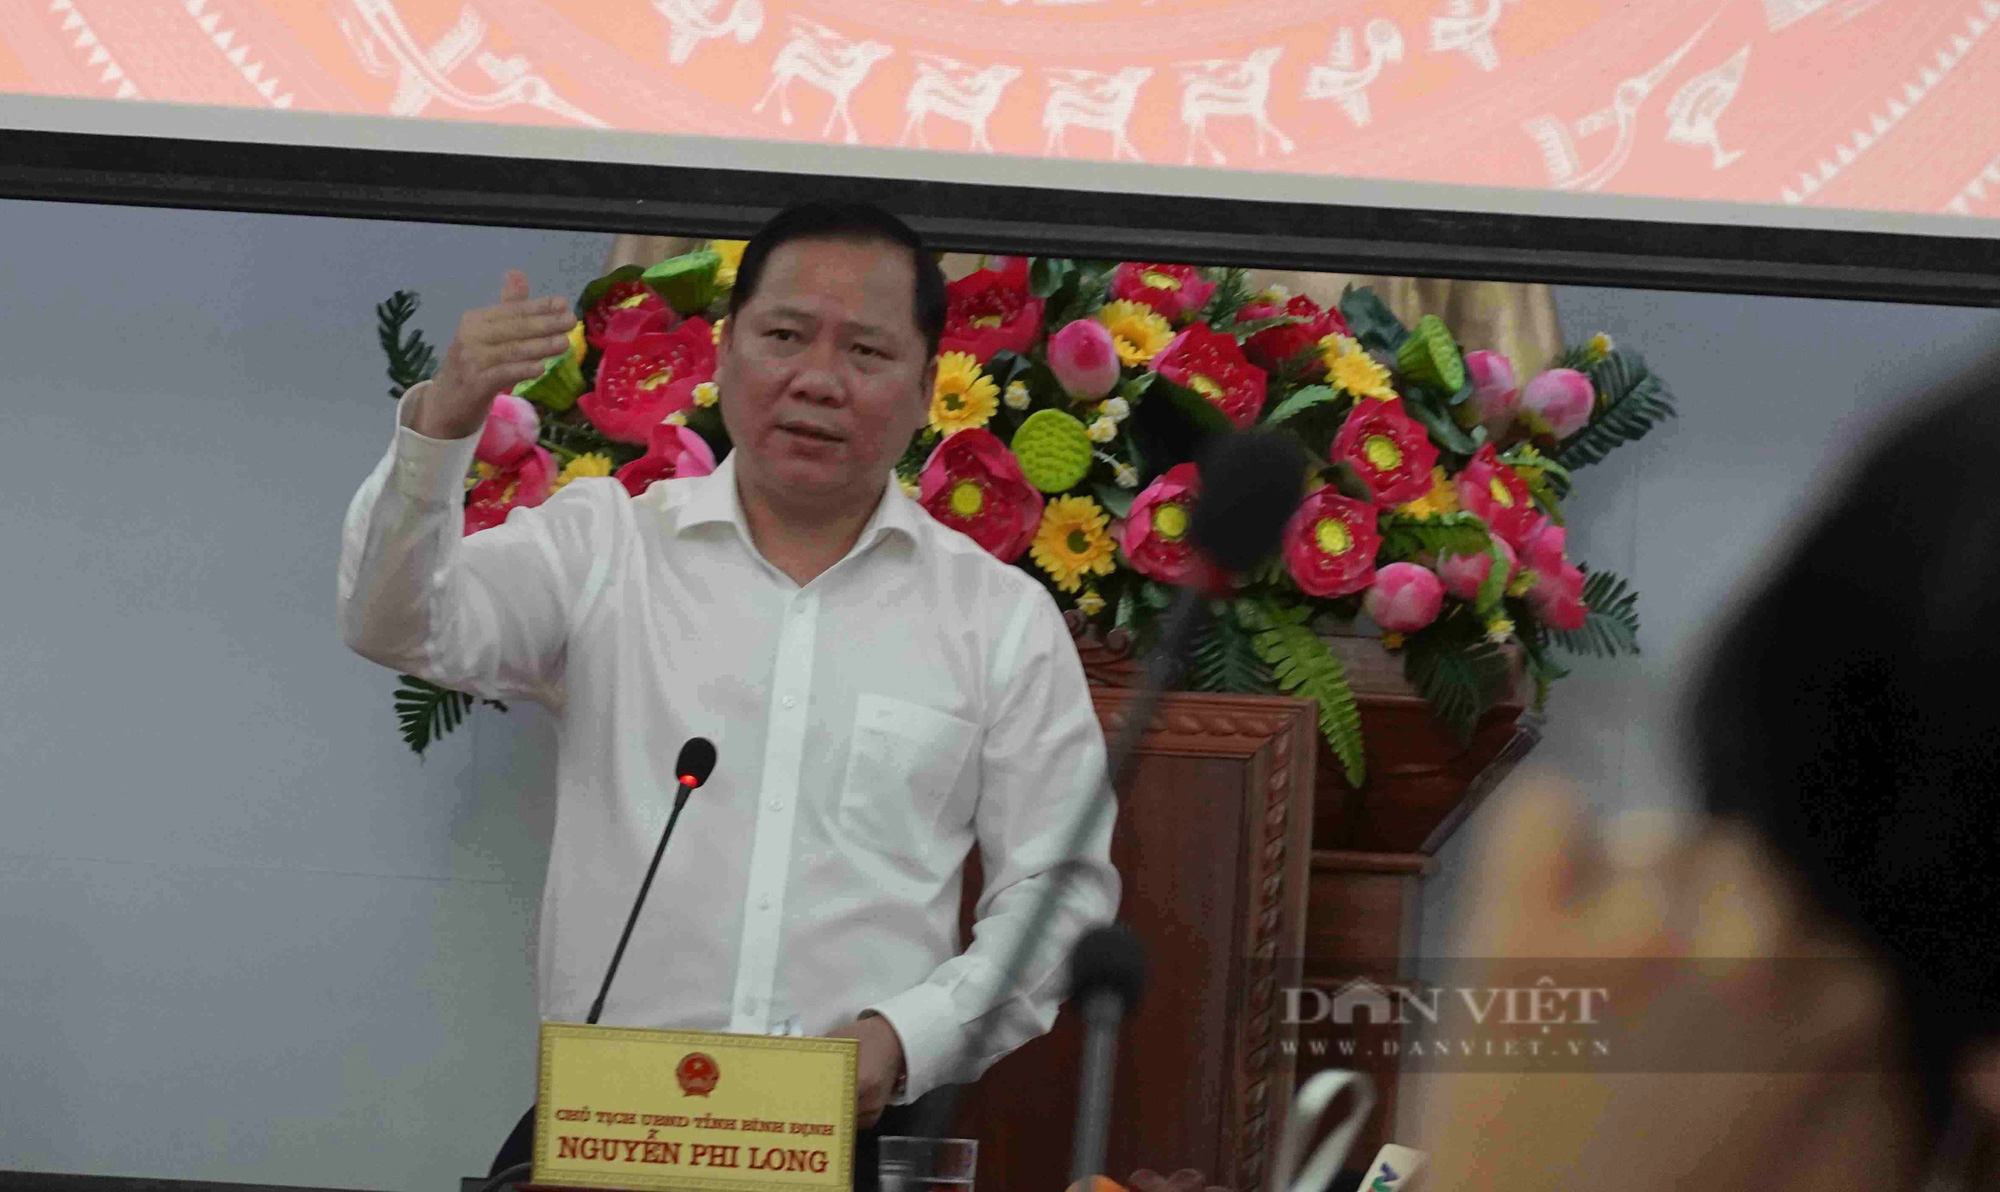 Chủ tịch Bình Định yêu cầu xử lý dứt điểm vụ san lấp bột đá “sai quy trình&quot; Báo Dân Việt phản ánh - Ảnh 2.